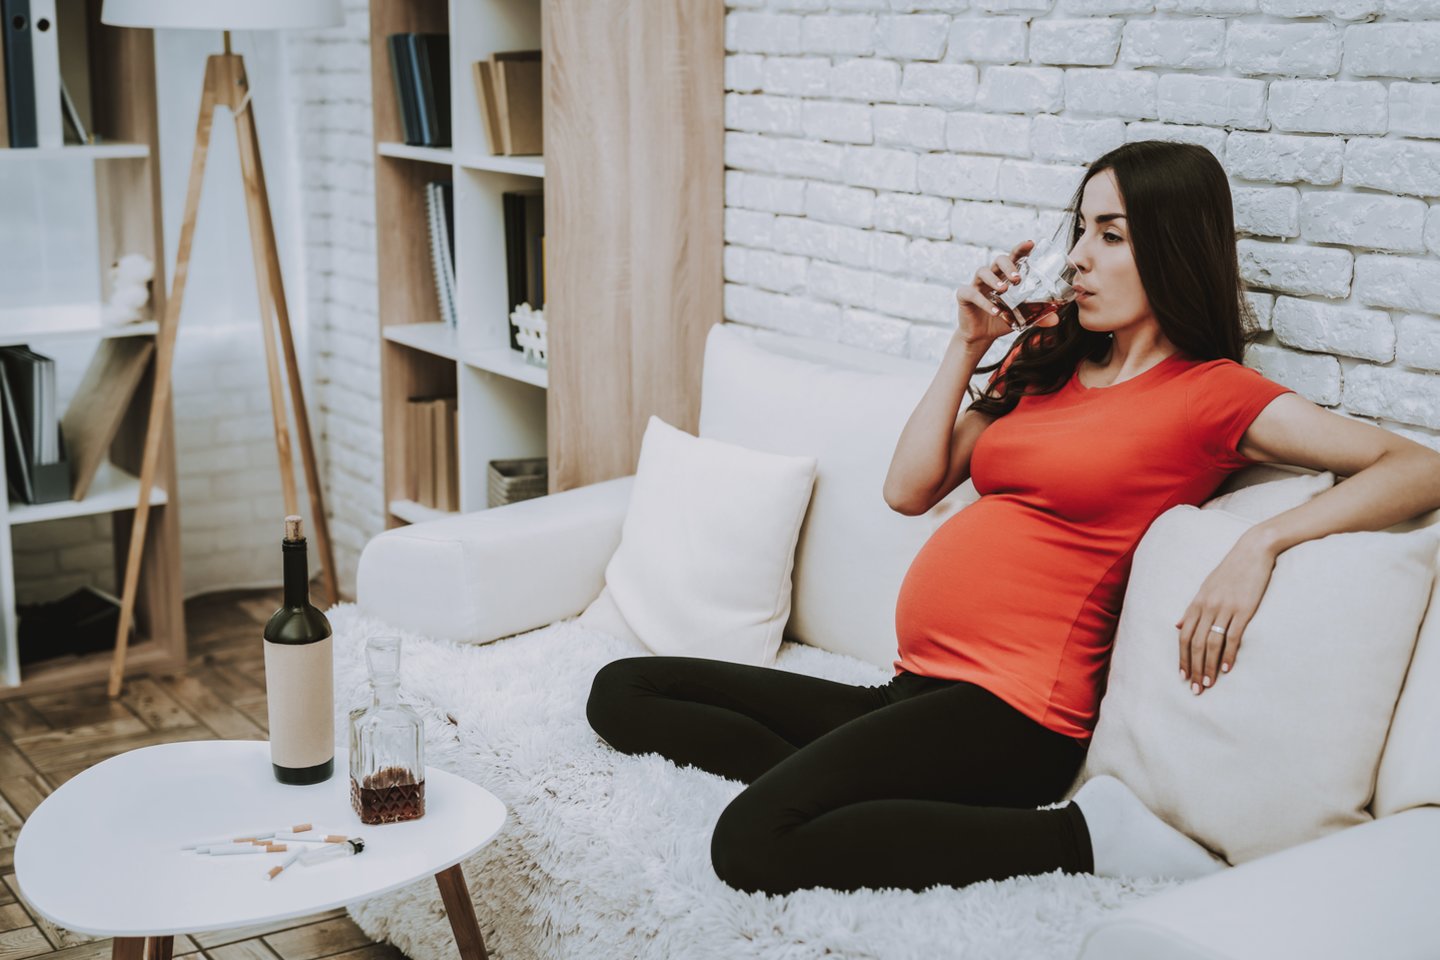  Apie 3 proc. nėščiųjų vartoja alkoholį.<br> 123rf.com nuotr.